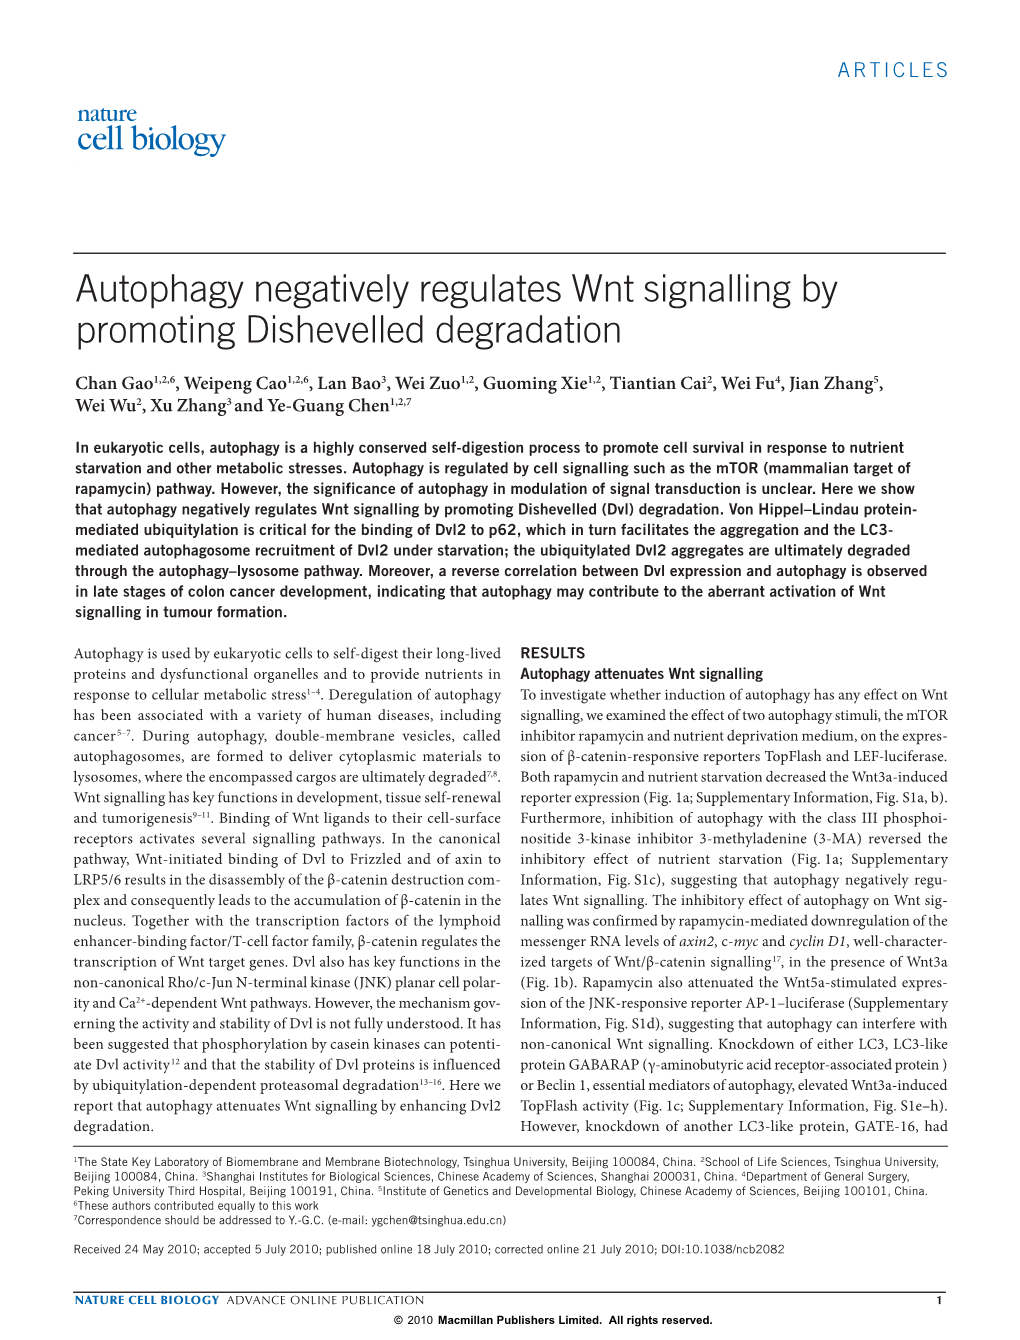 Autophagy Negatively Regulates Wnt Signalling by Promoting Dishevelled Degradation